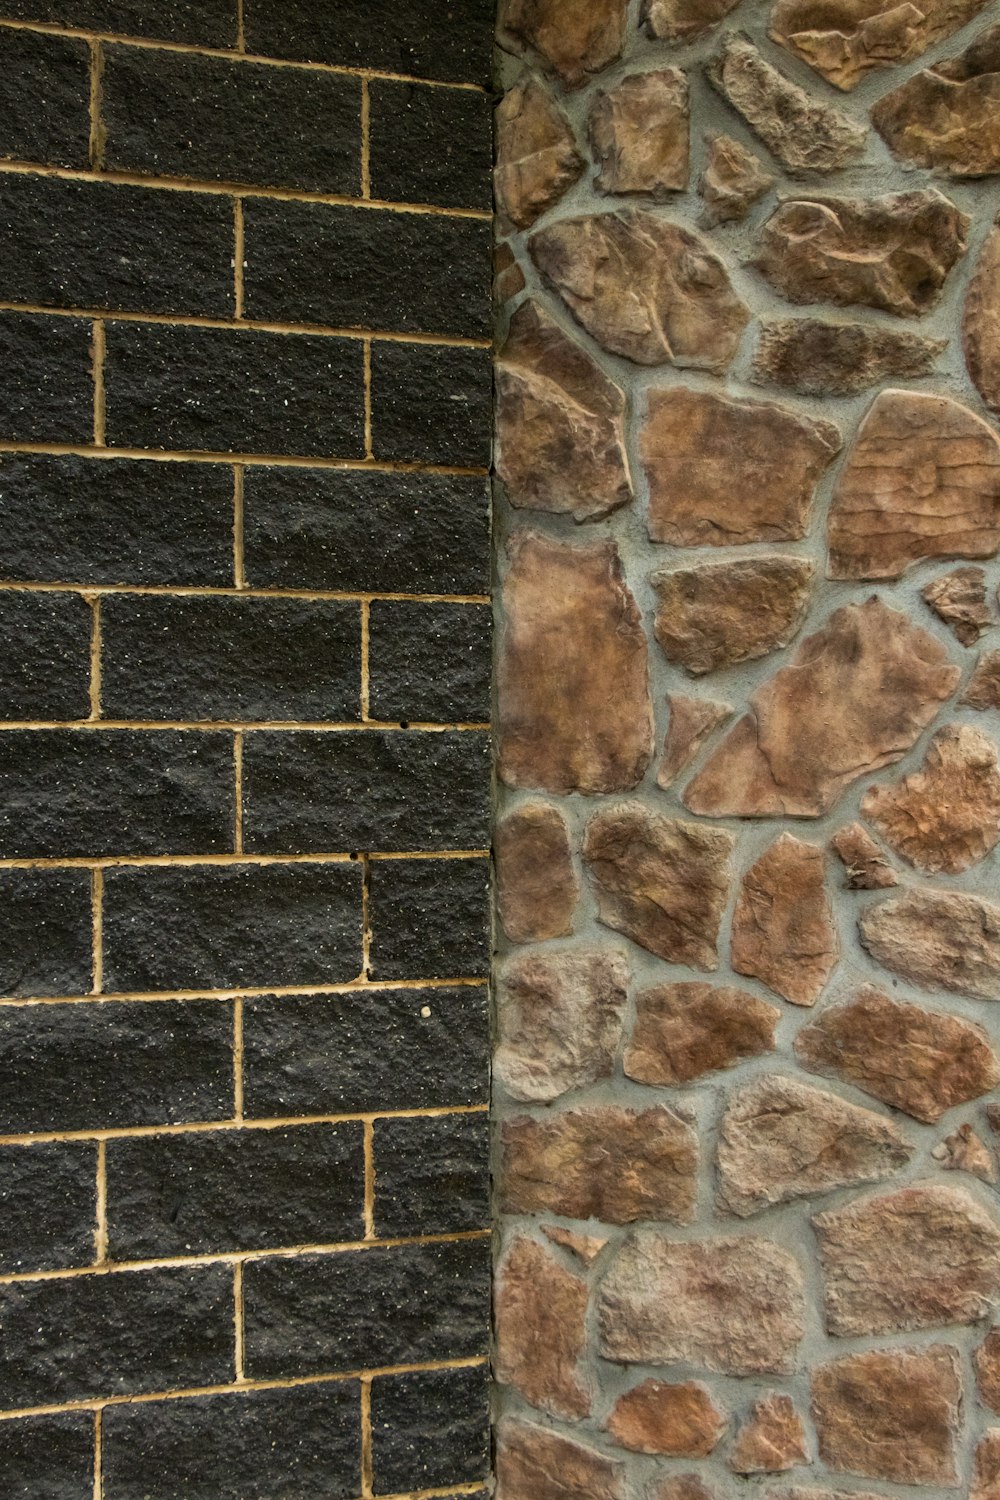 brown and gray brick wall